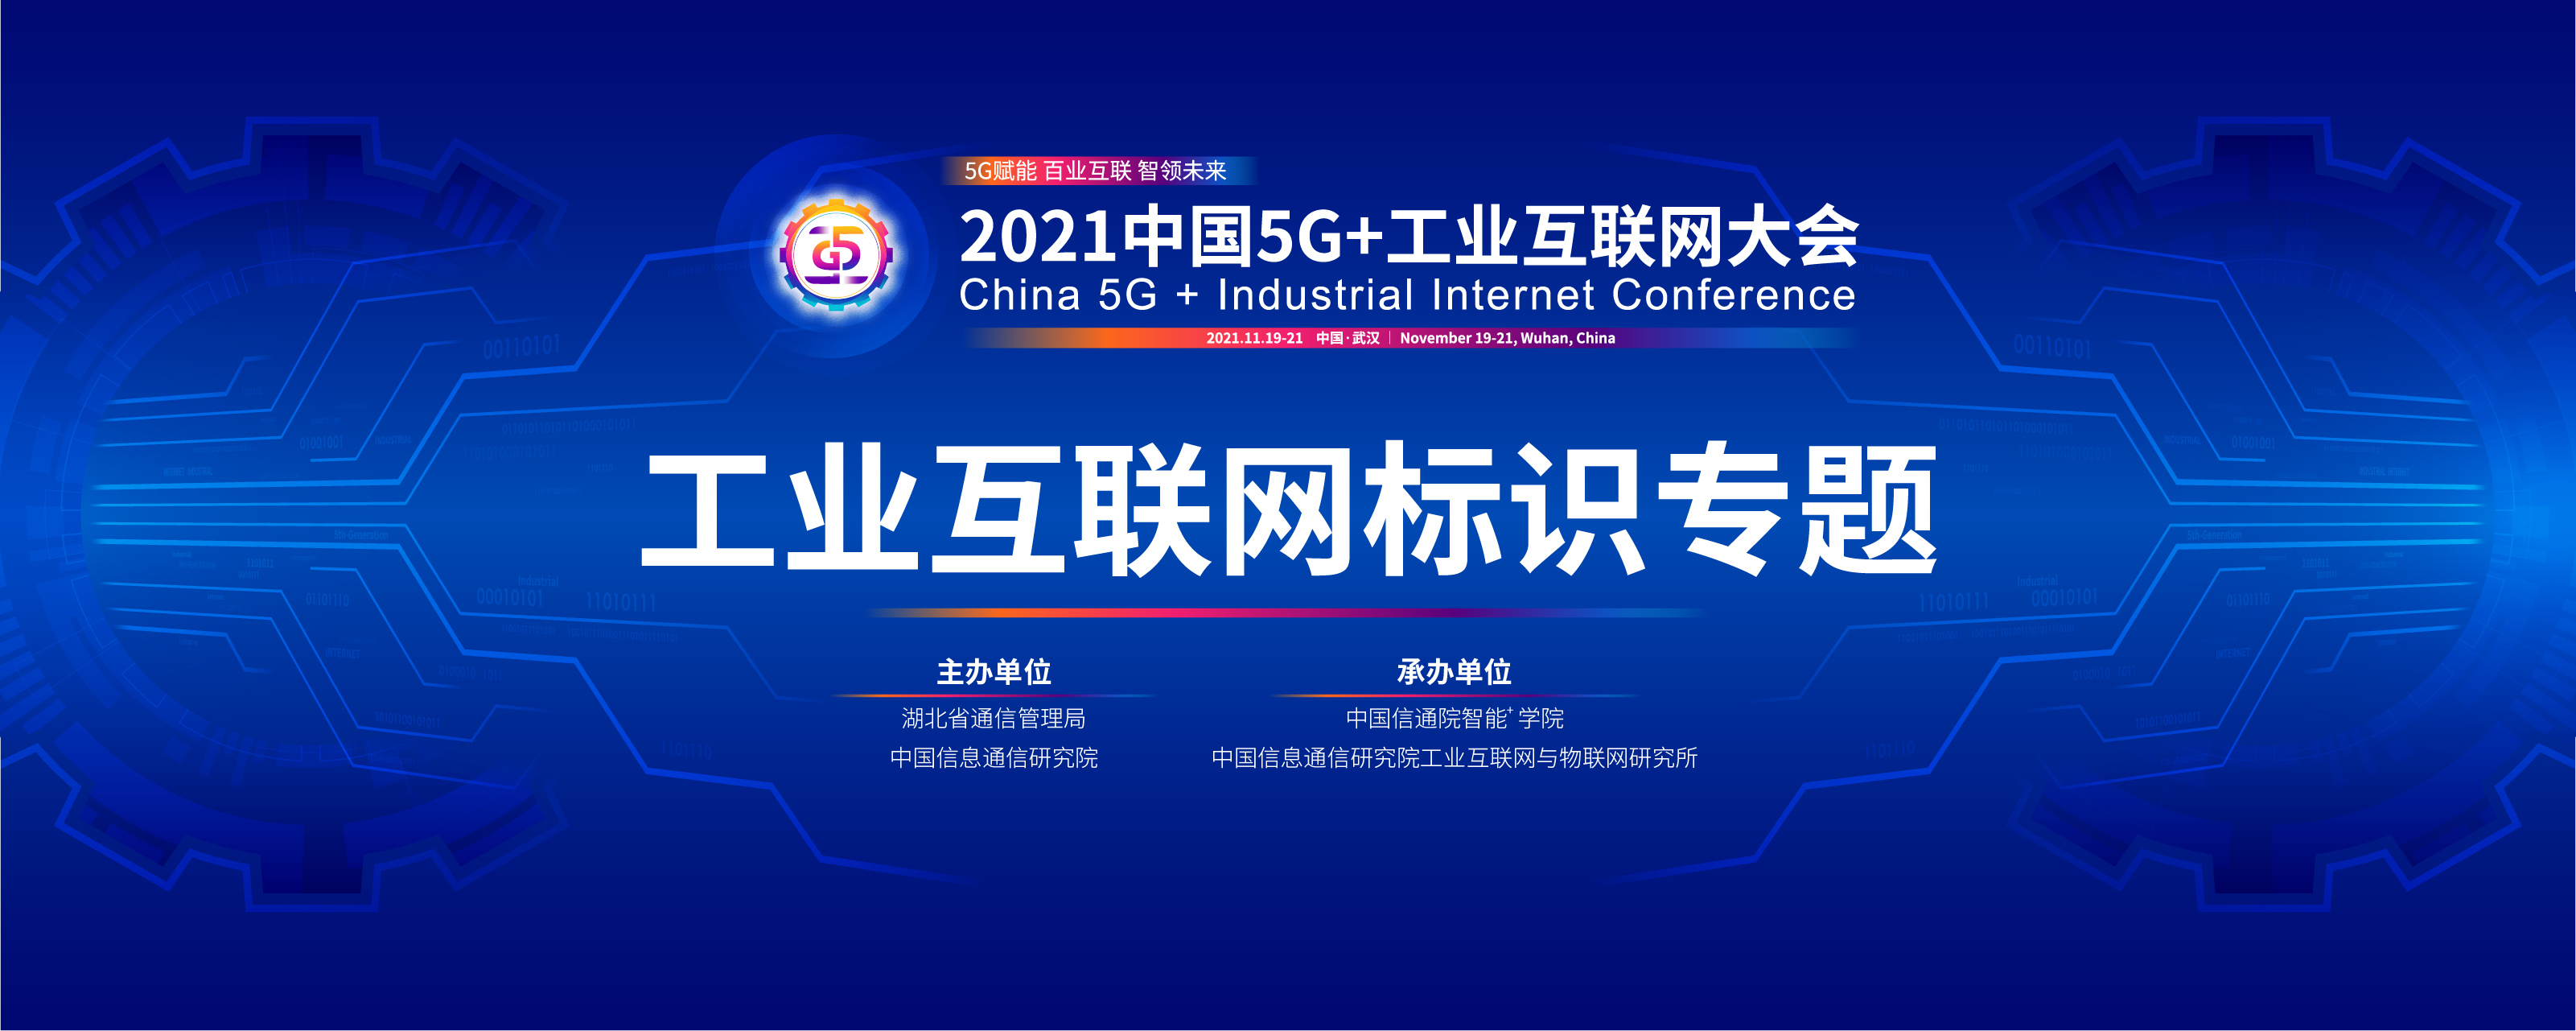 2021中國5G+工業互聯網大會“工業互聯網標識”專題會議將于11月21日下午召開